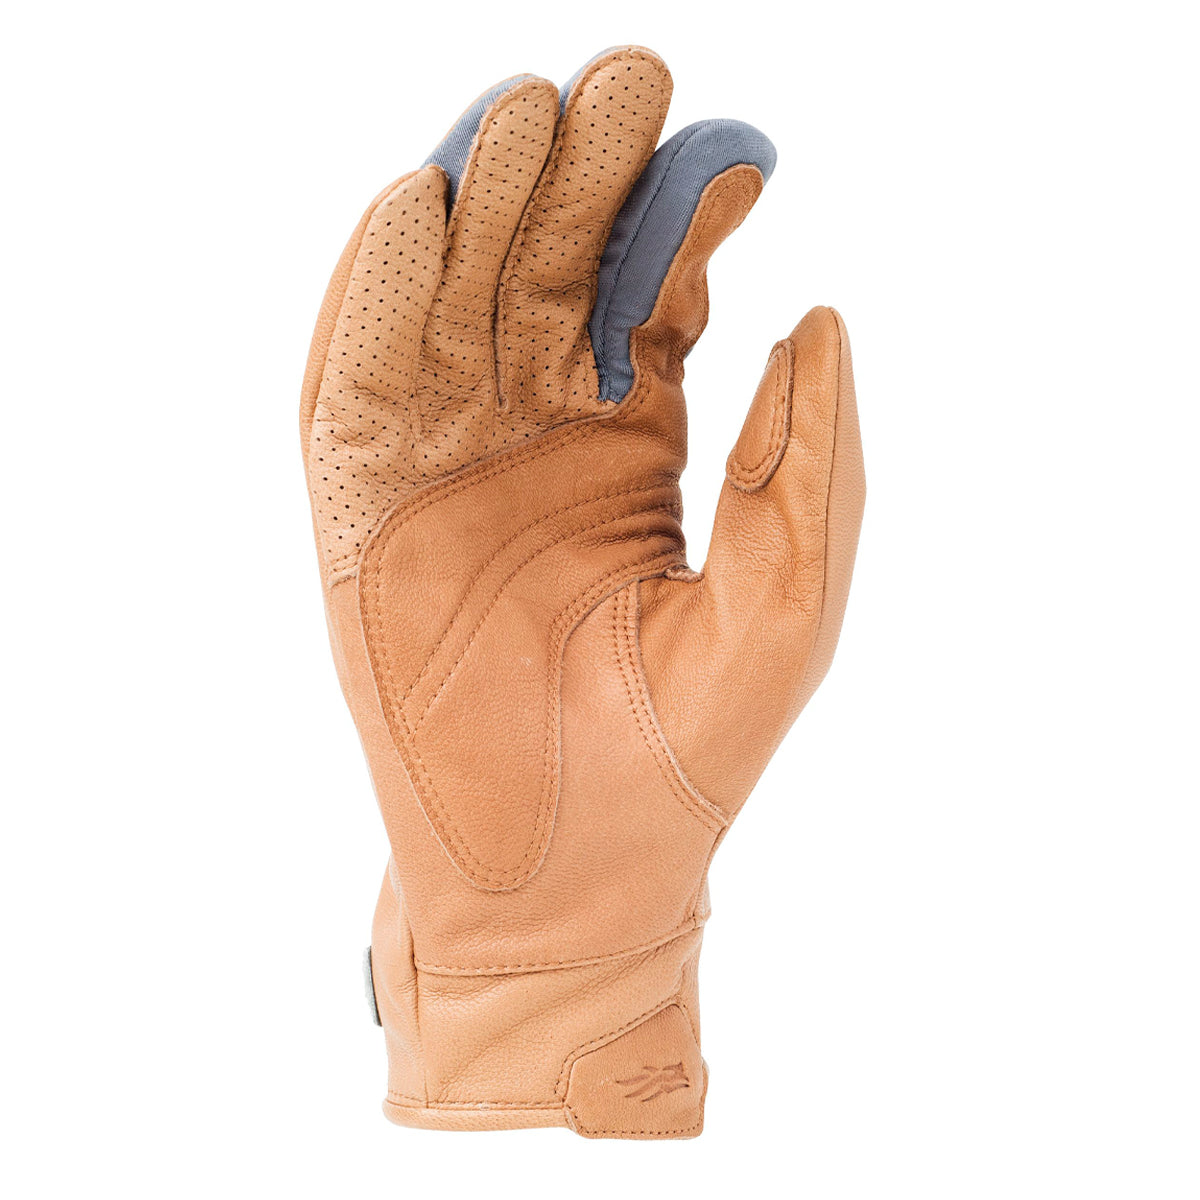 Sitka Gunner WS Glove in Sitka Gunner WS Glove by Sitka | Apparel - goHUNT Shop by GOHUNT | Sitka - GOHUNT Shop